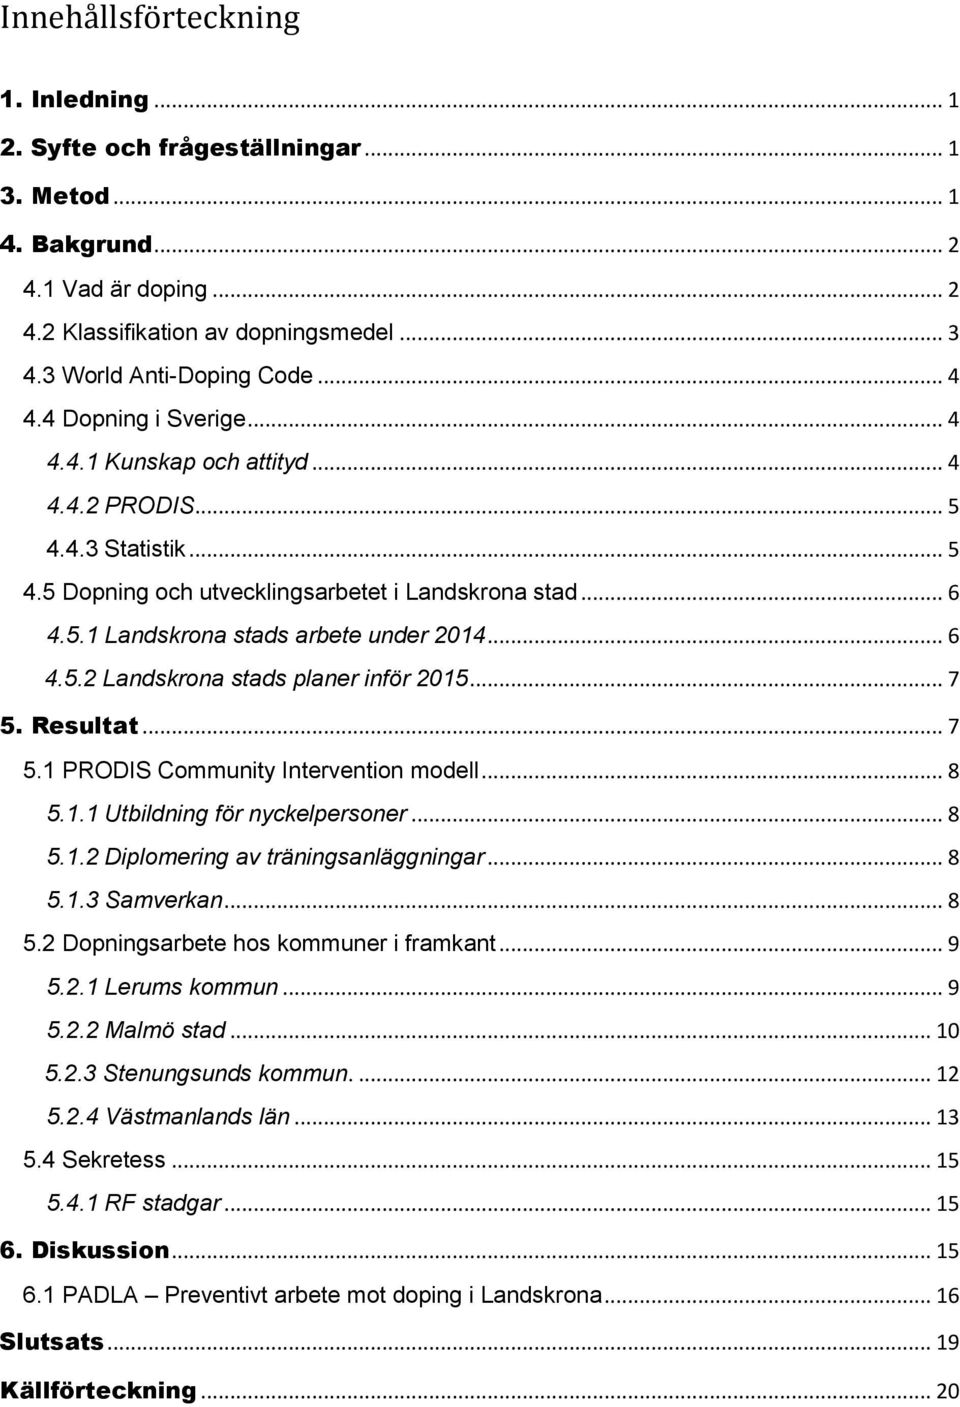 .. 6 4.5.2 Landskrona stads planer inför 2015... 7 5. Resultat... 7 5.1 PRODIS Community Intervention modell... 8 5.1.1 Utbildning för nyckelpersoner... 8 5.1.2 Diplomering av träningsanläggningar.